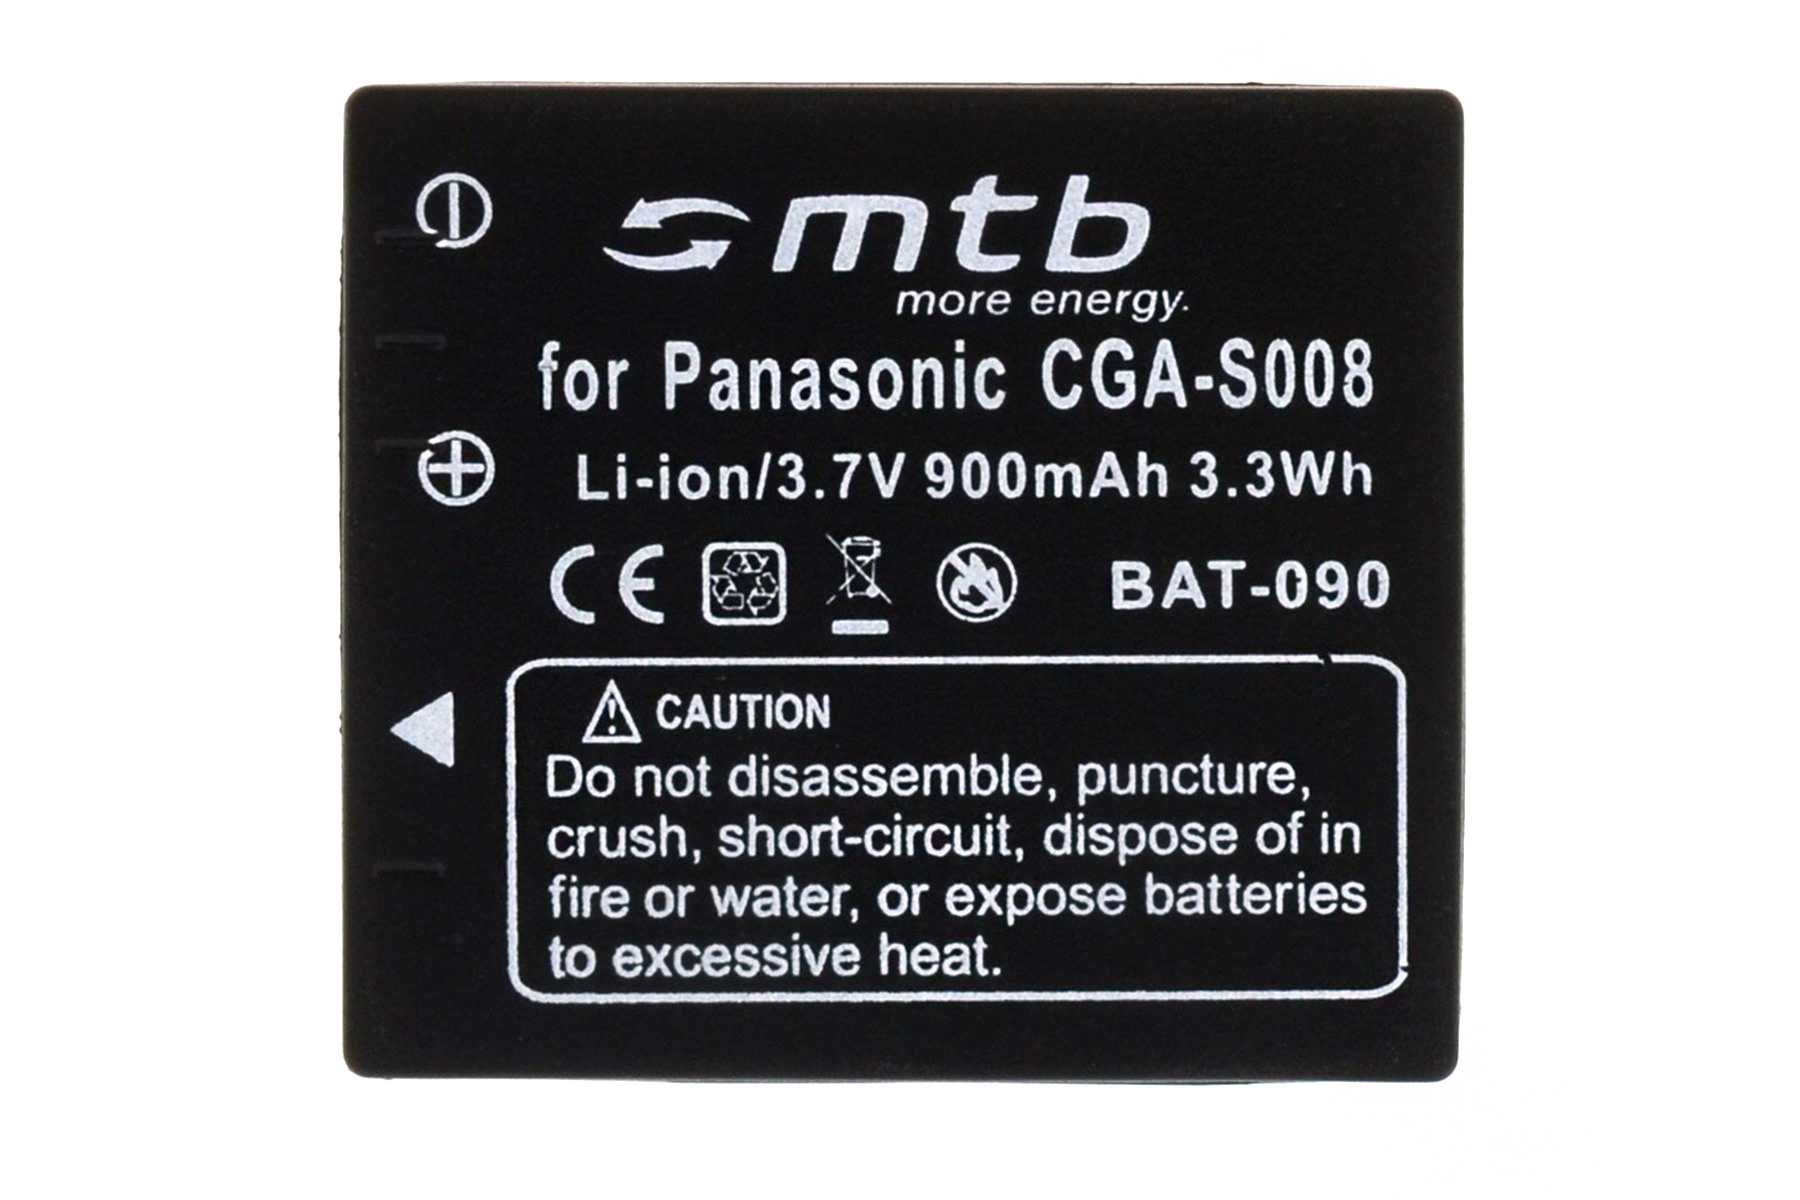 BAT-090 MTB 900 mAh Li-Ion, Akku, CGA-S008 ENERGY 2x MORE